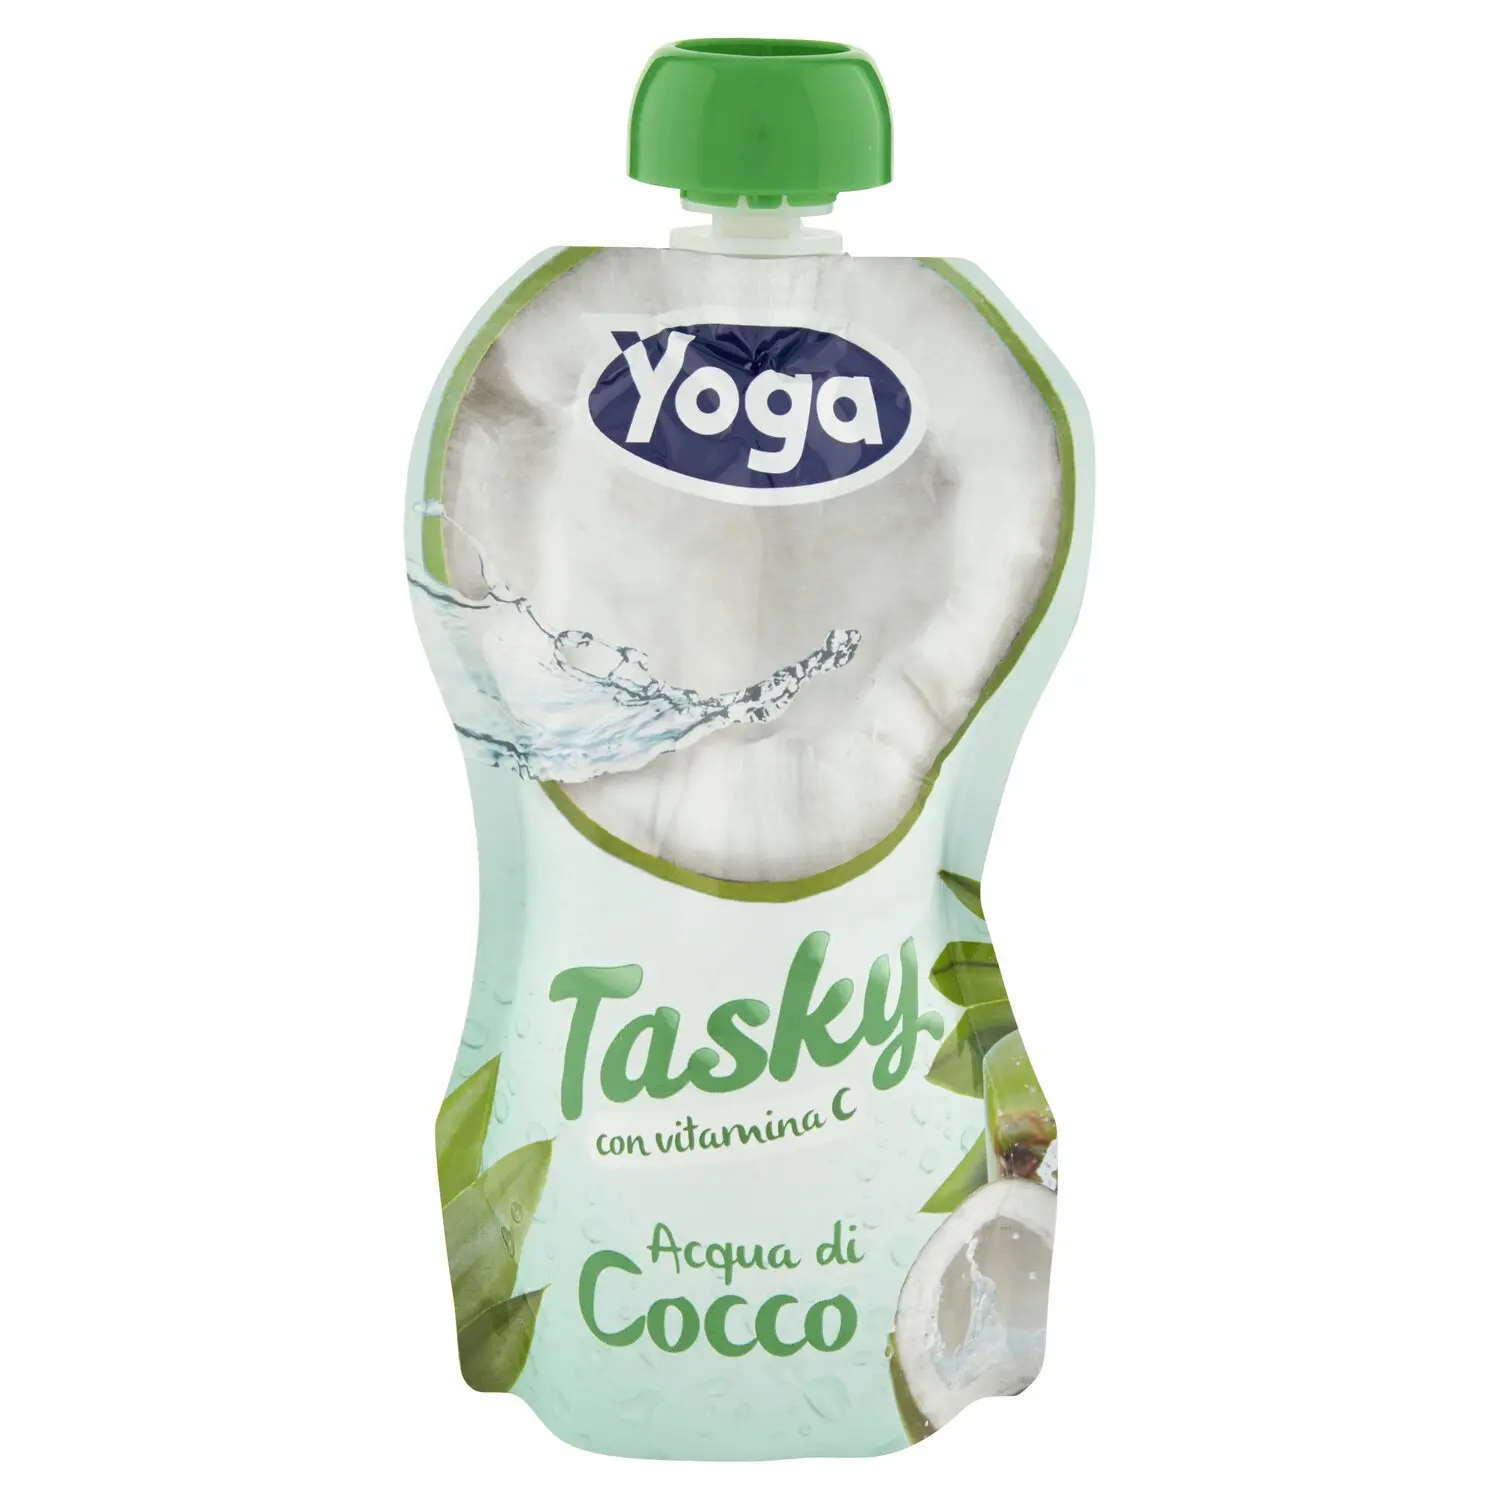 Yoga Tasky Acqua di Cocco 200 ml